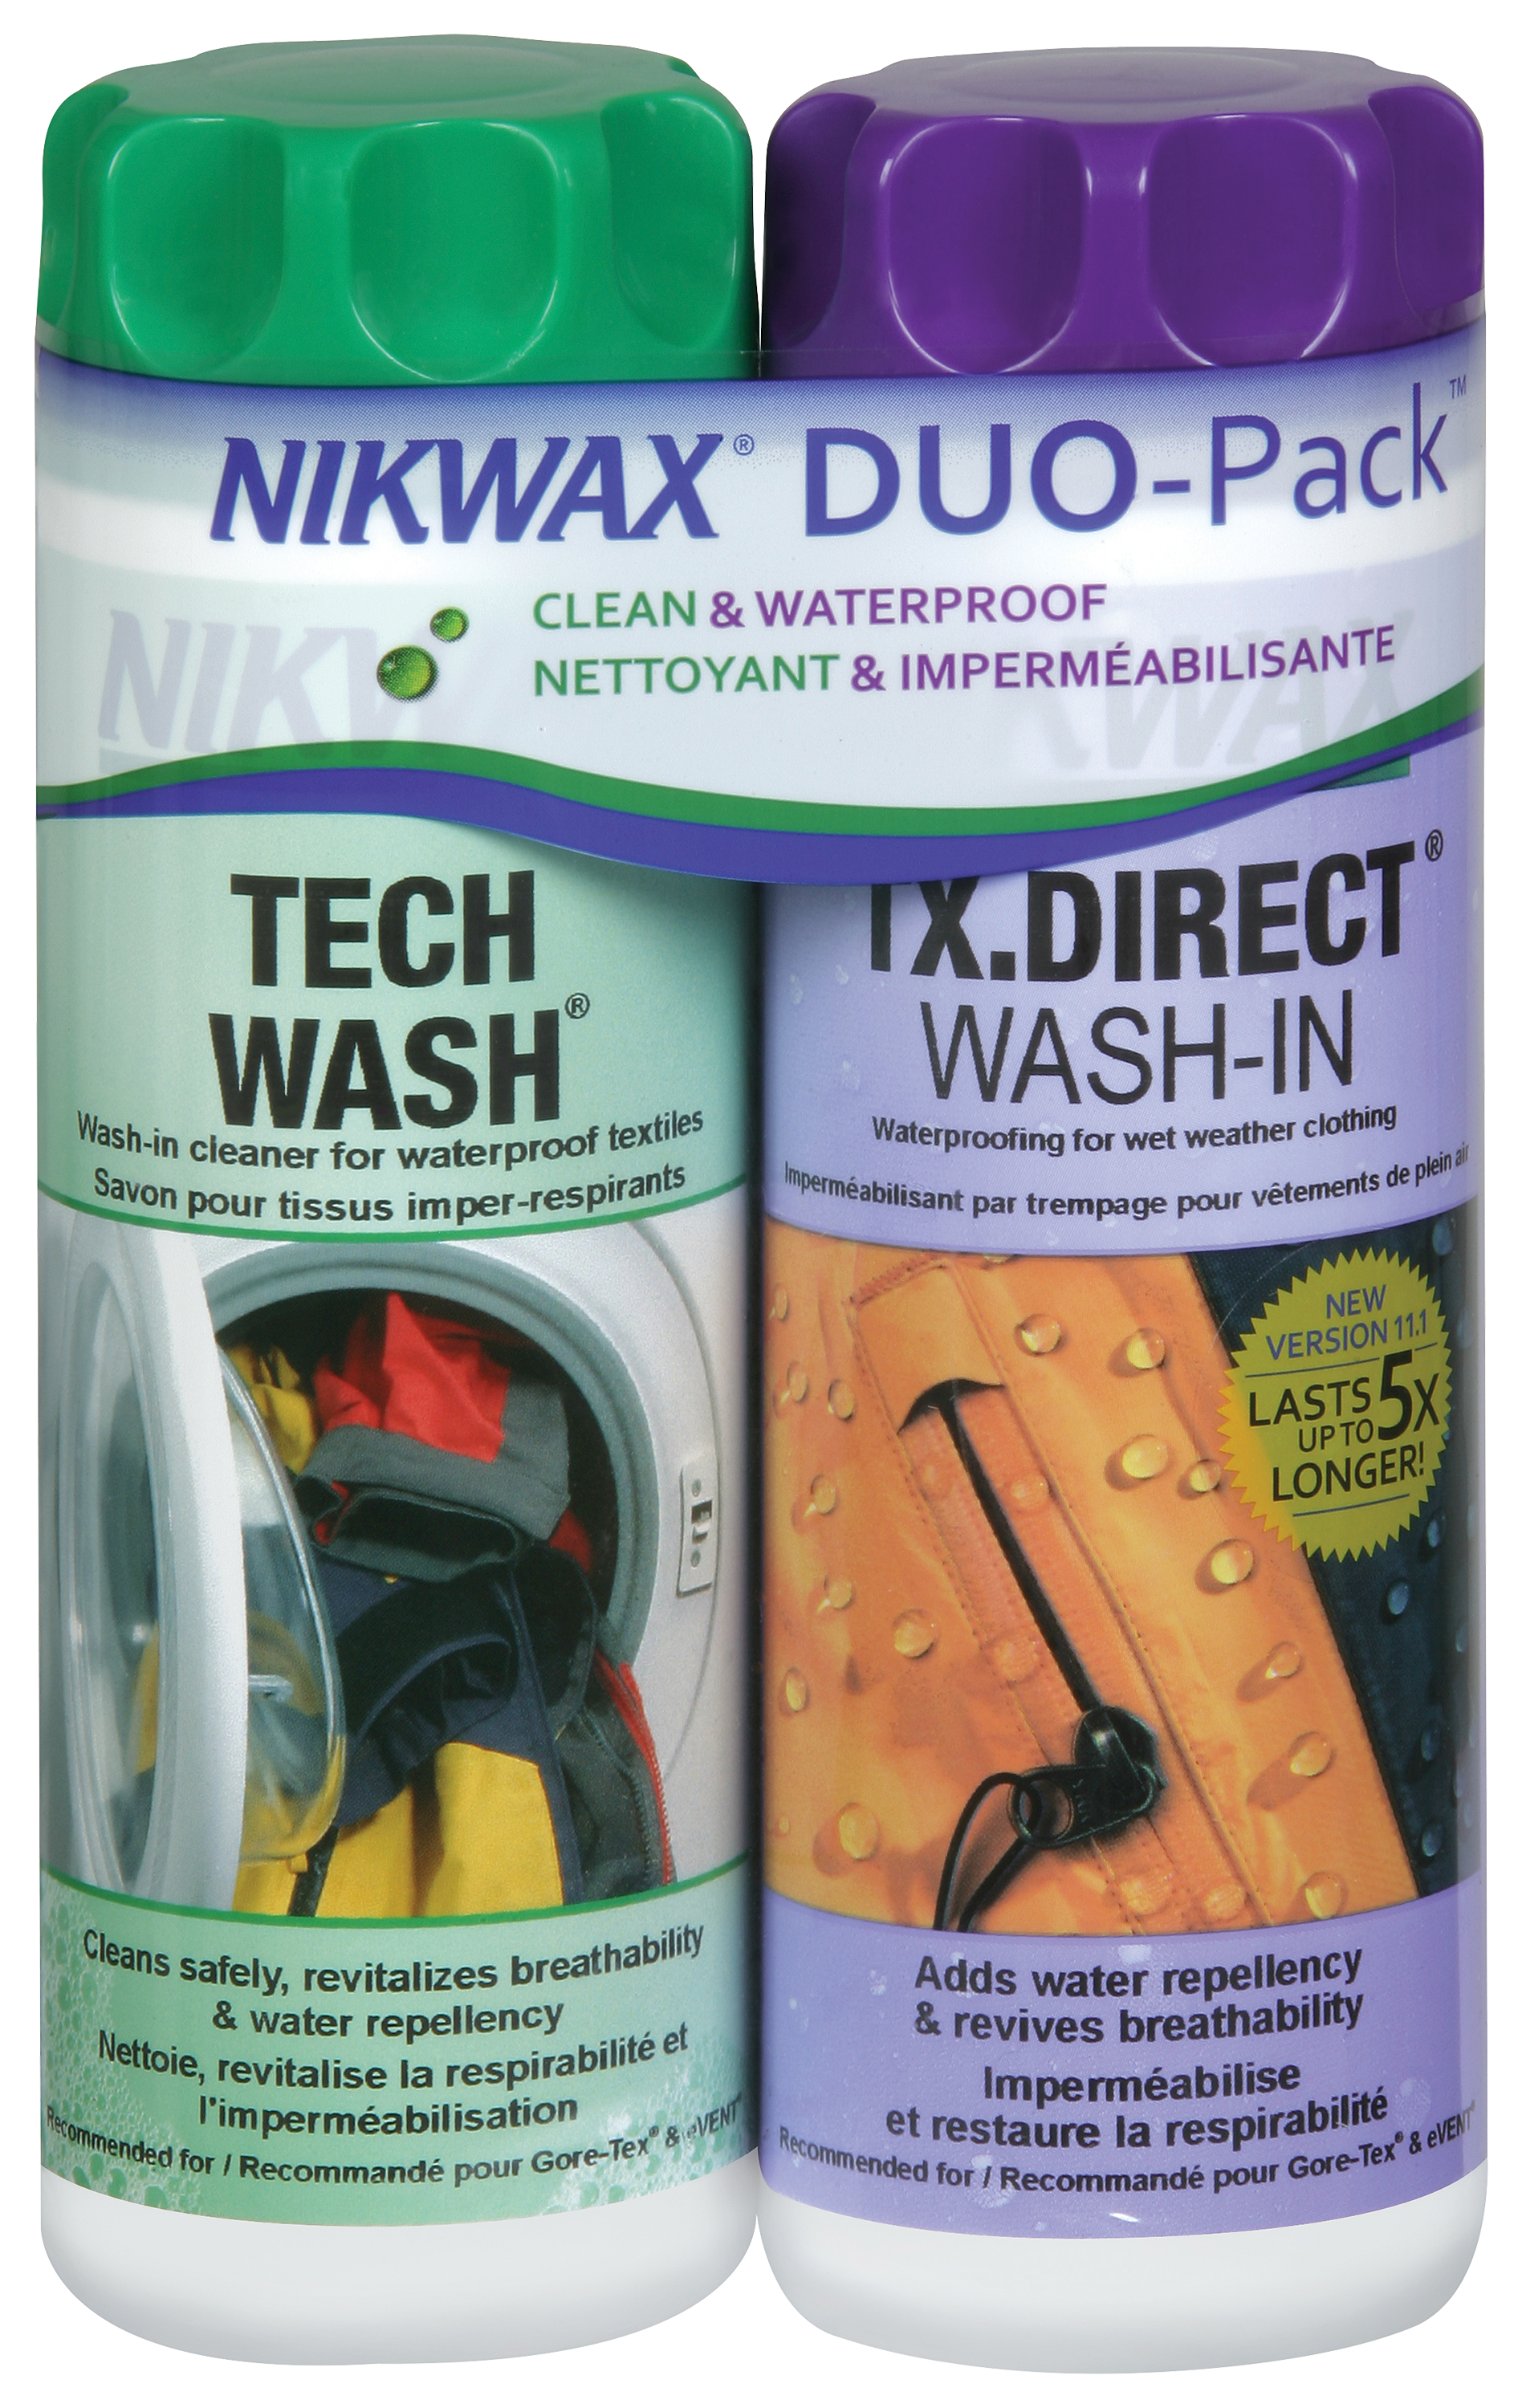 NIKWAX - THE ORIGINAL TECH WASH®